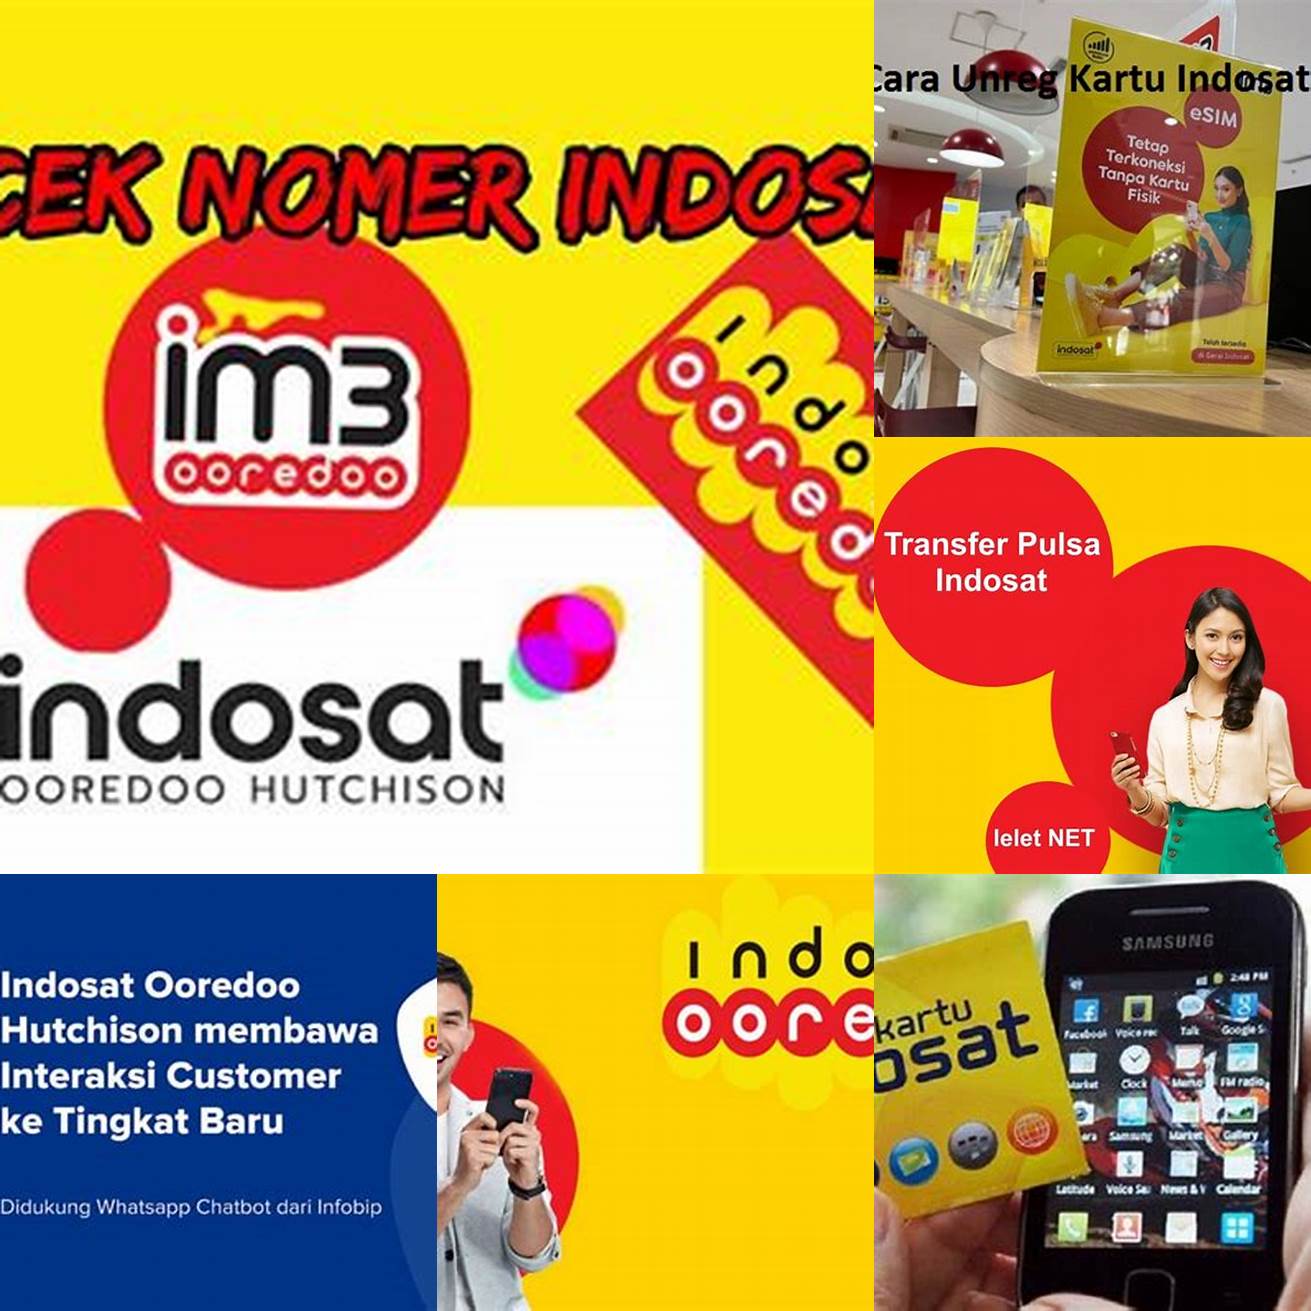 Melalui layanan pelanggan Indosat